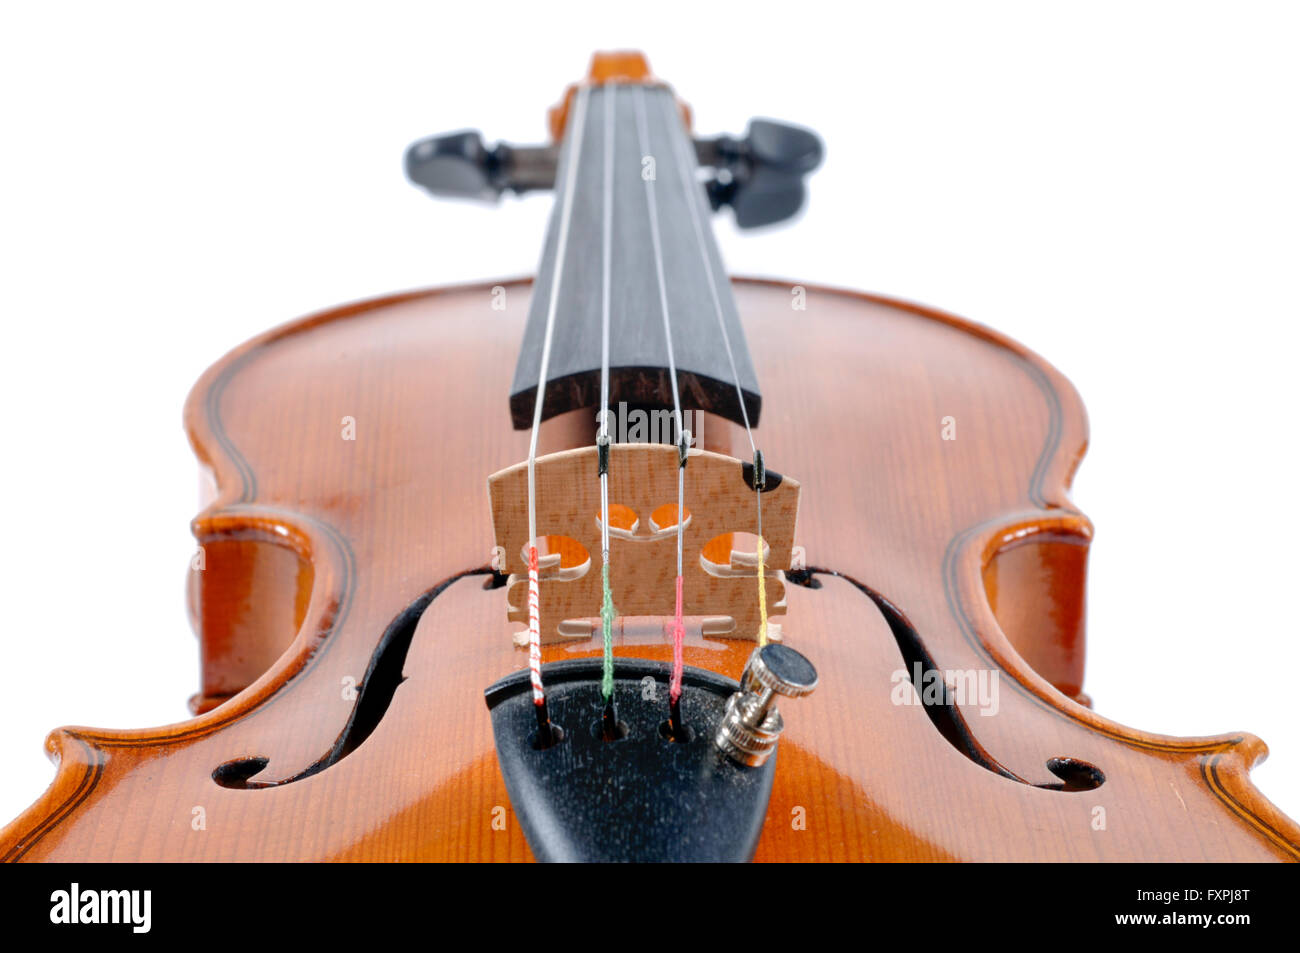 Dettaglio del violino come strumento musicale della orchestra Foto Stock